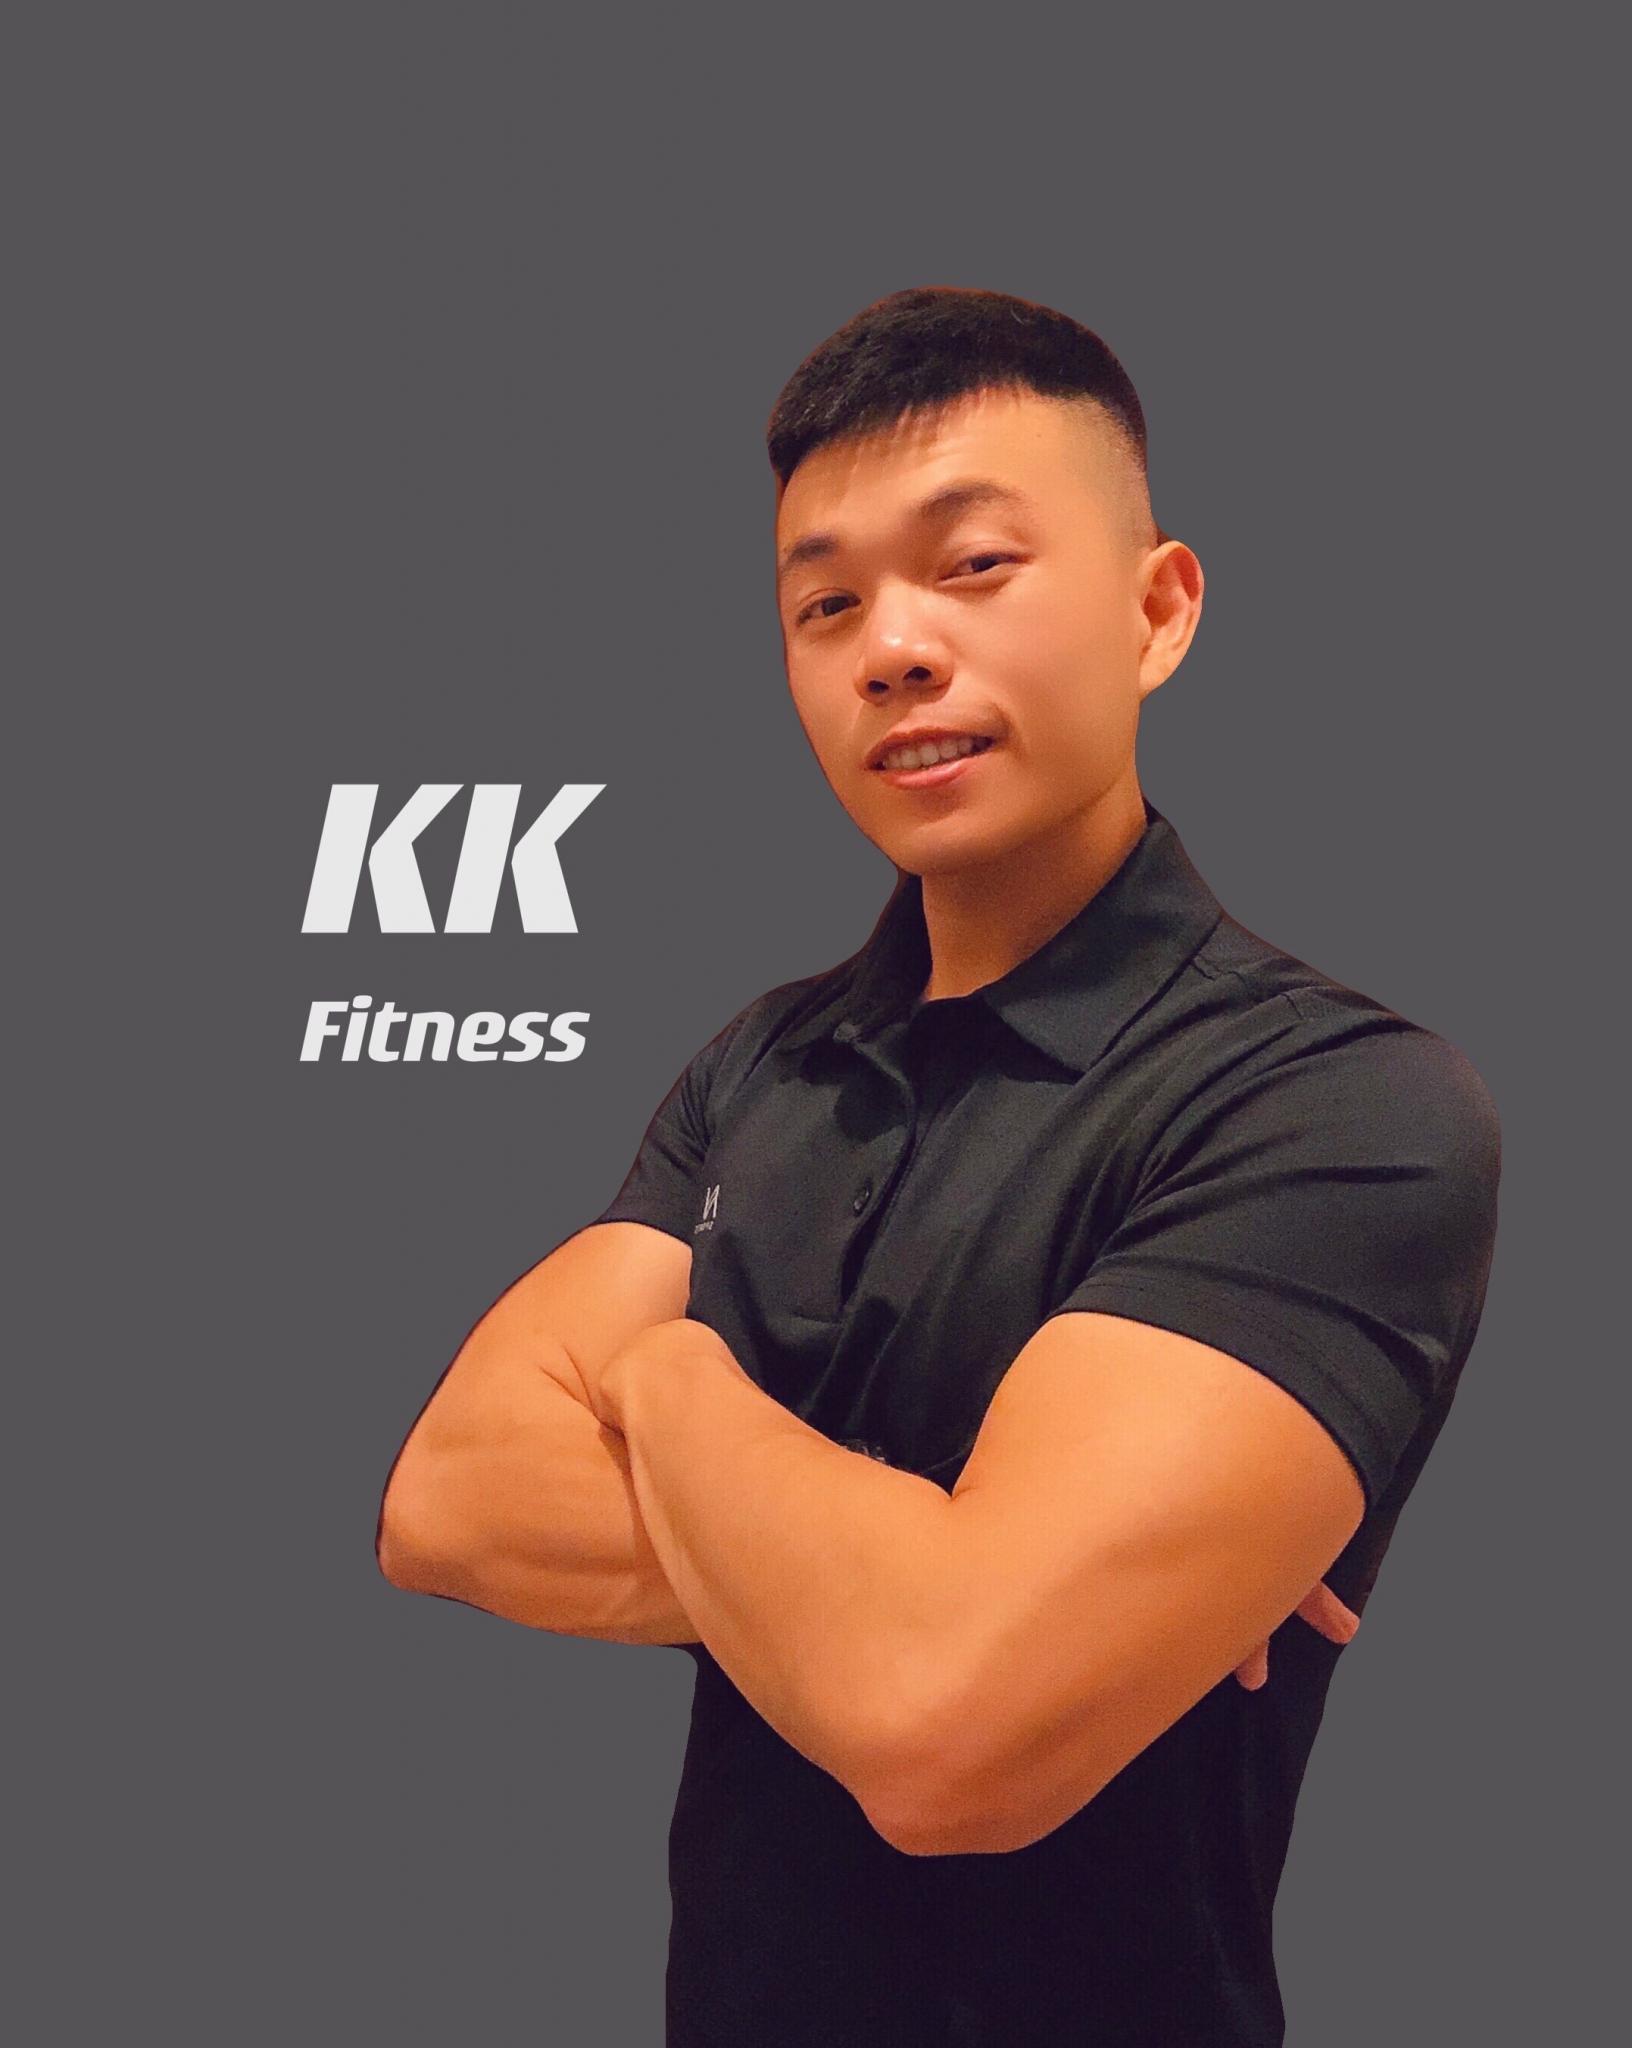 一對一私人健身課程 - KK